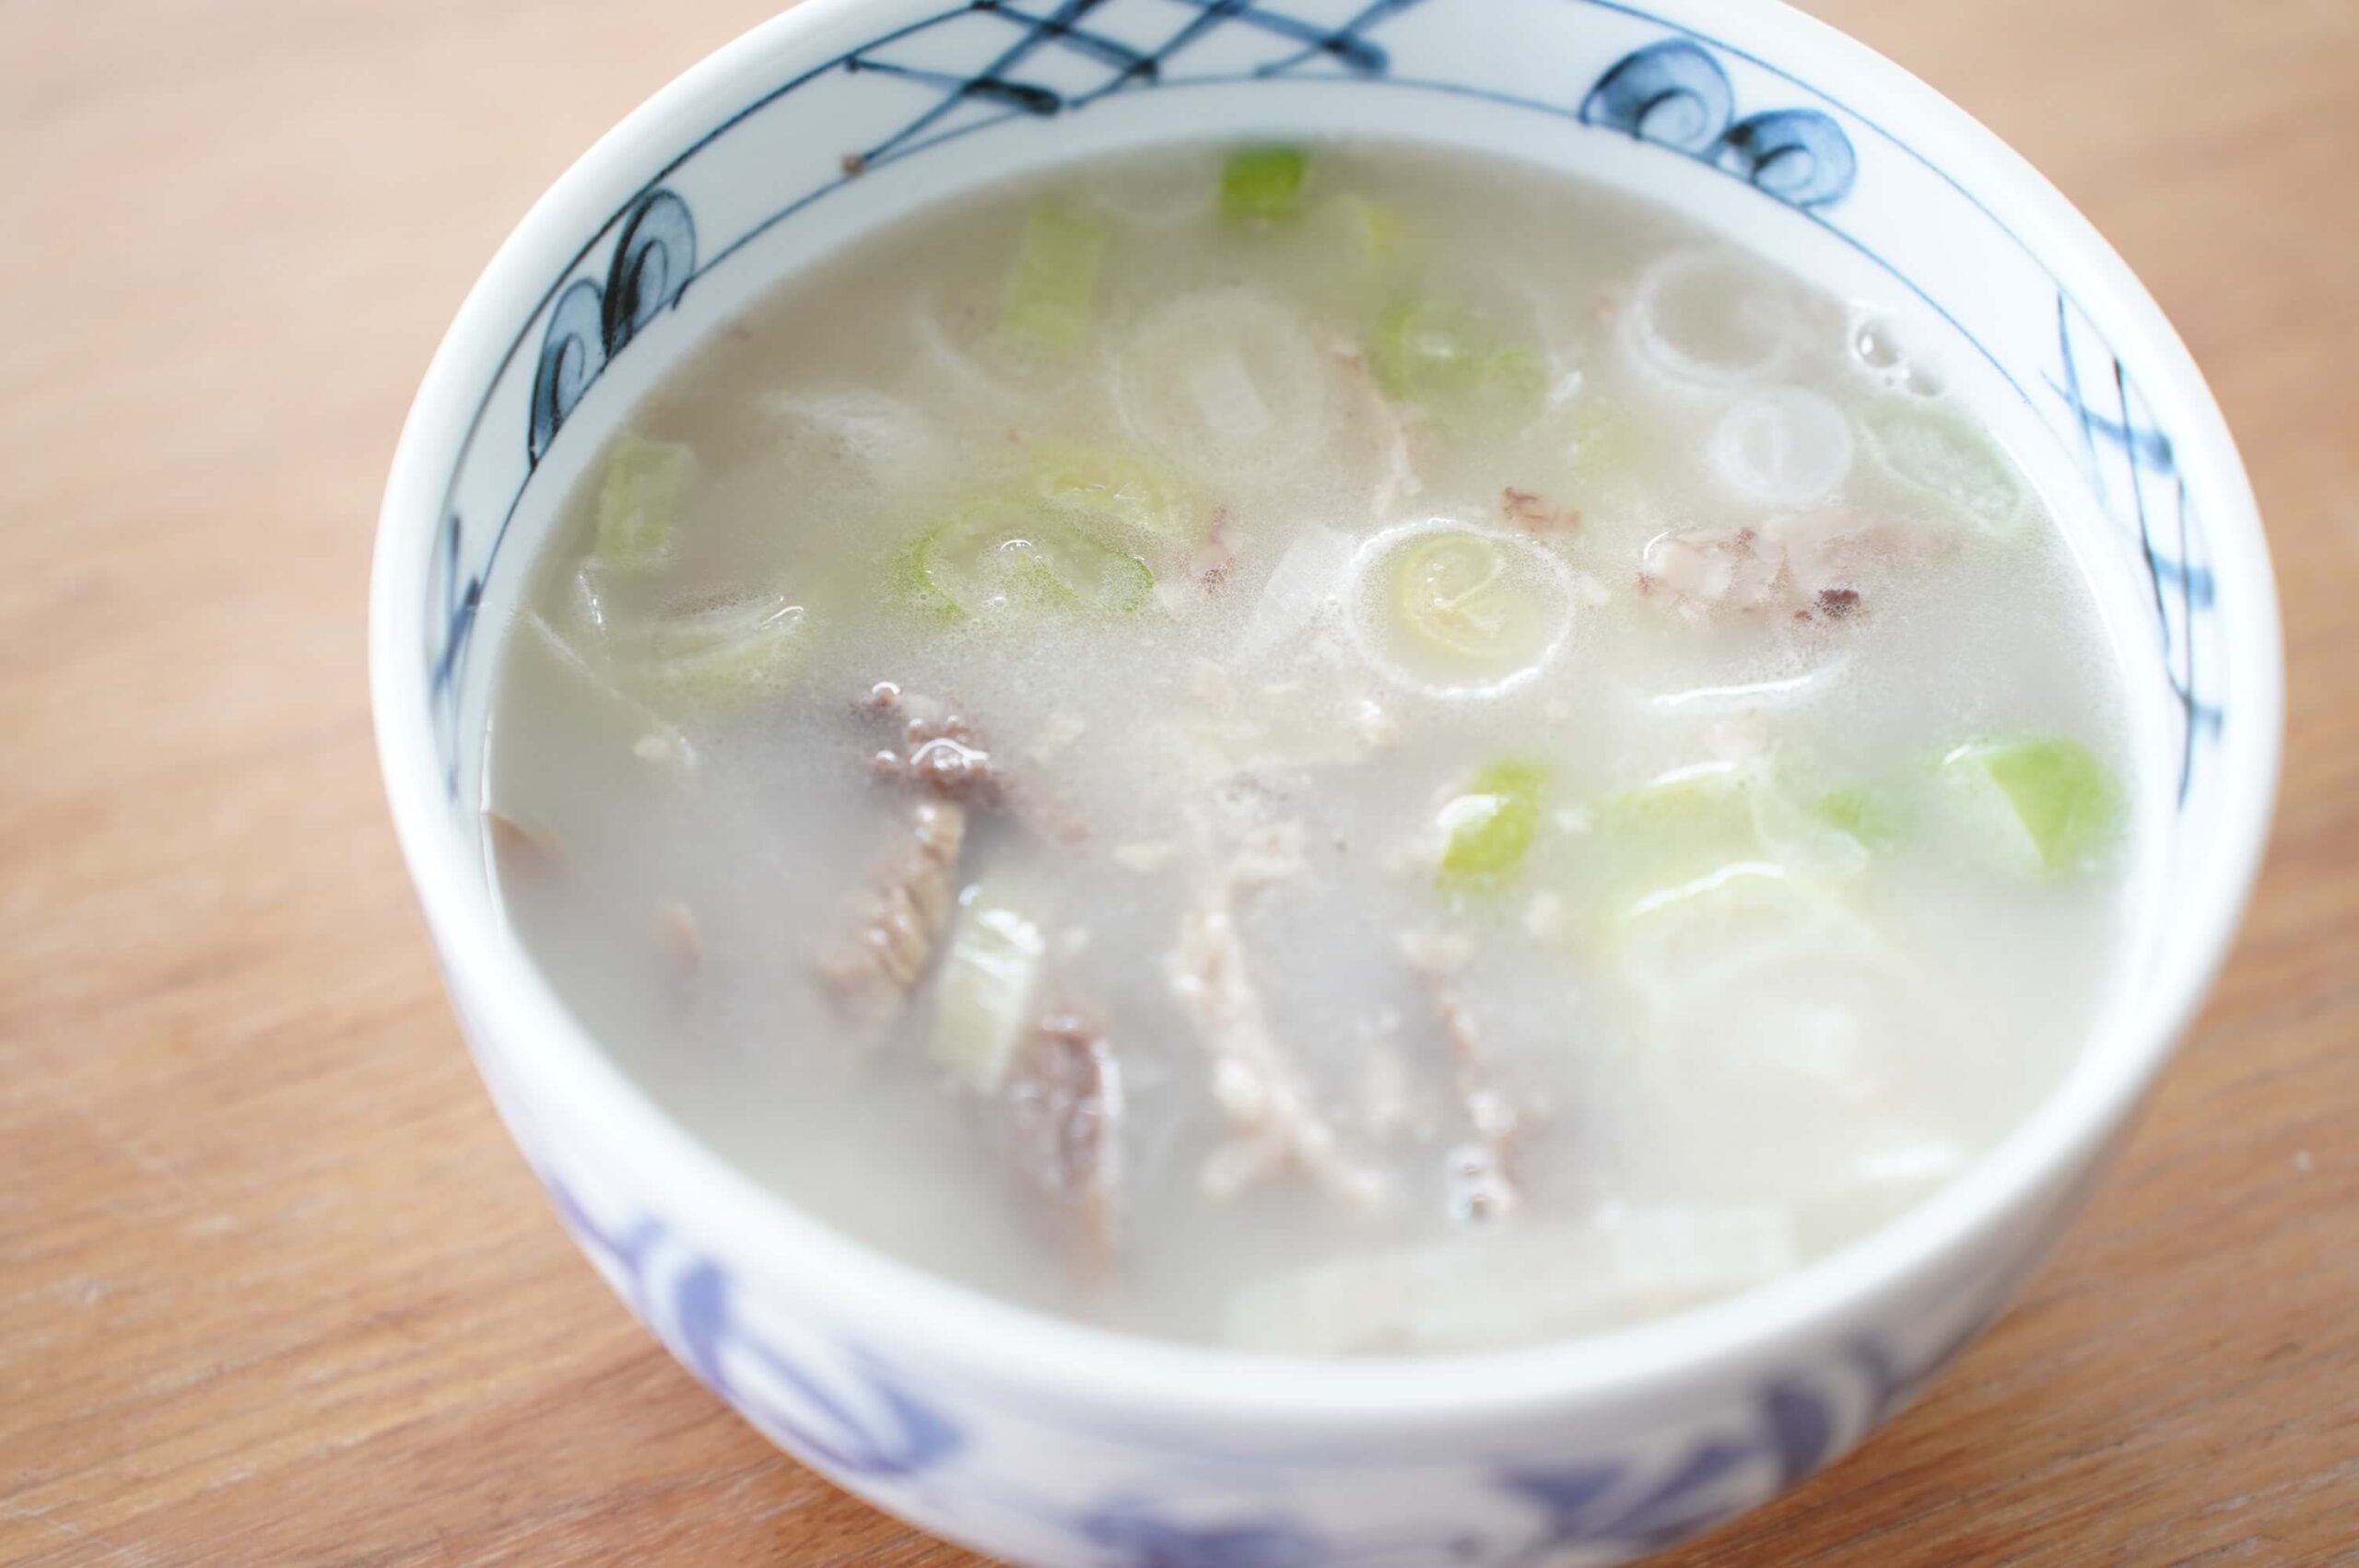 おすすめの美味しい韓国料理の冷凍食品「ソルロンタン」を皿に盛り付けた写真